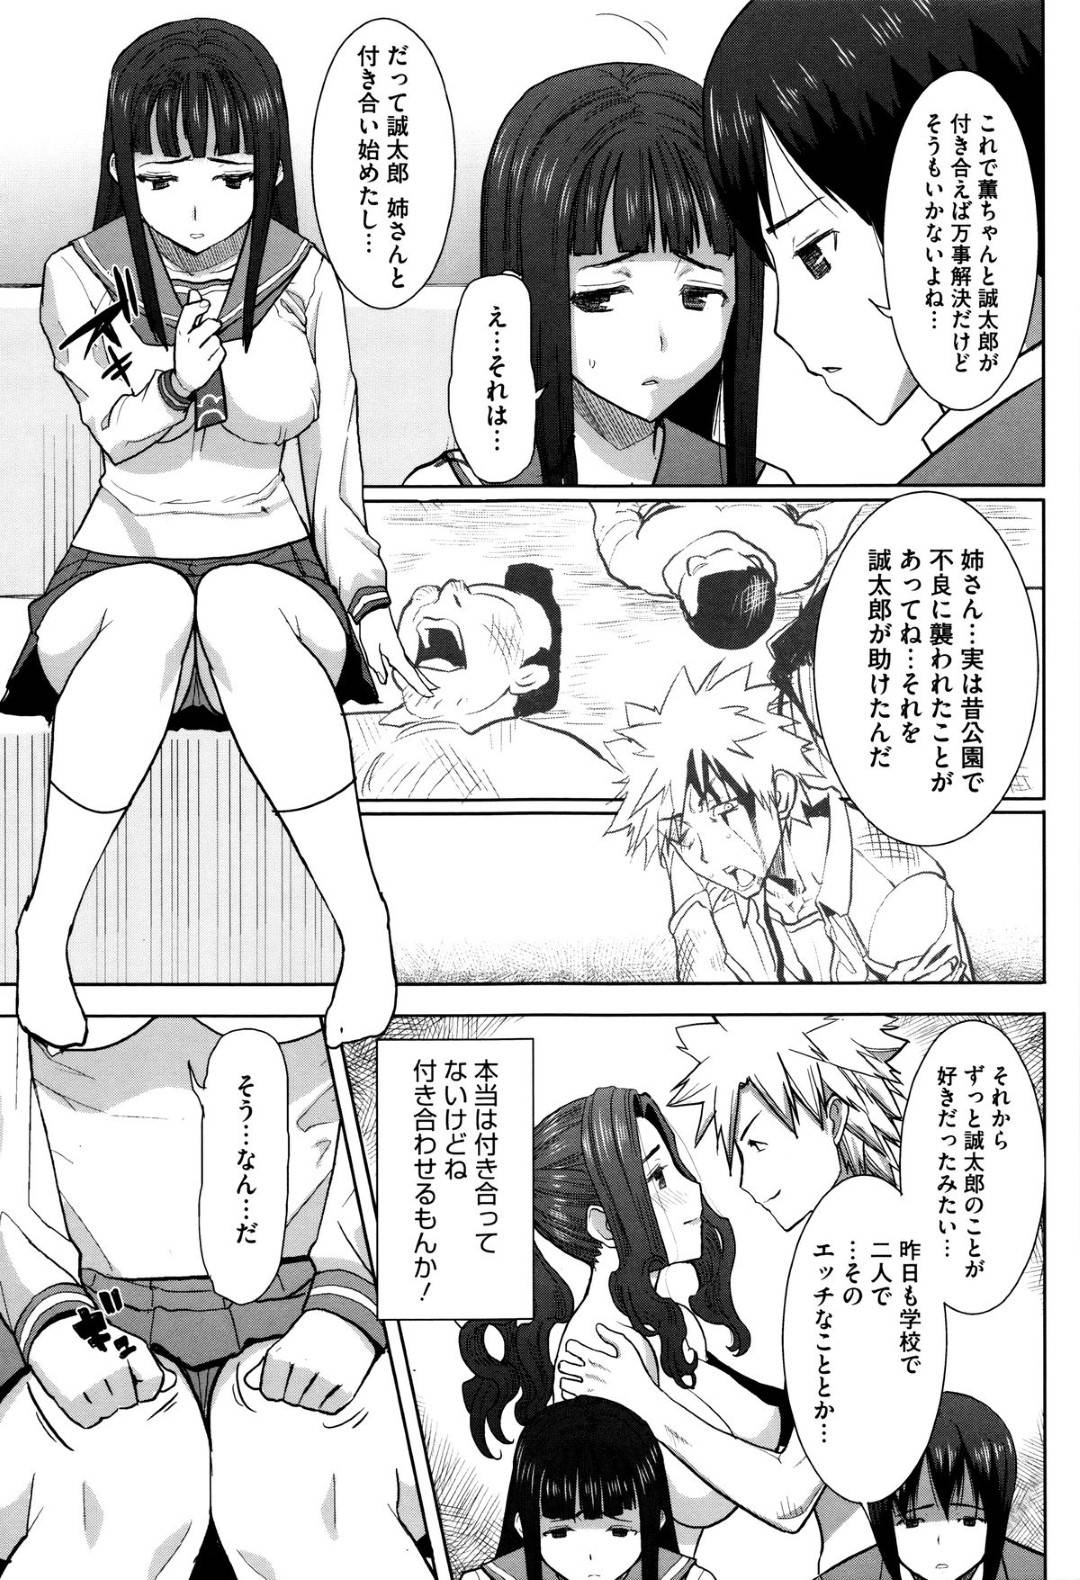 【エロ漫画】金髪ツインテールの美少女アスカは、黒髪巨乳メガネのマリとレズセックスする…【でん吉】